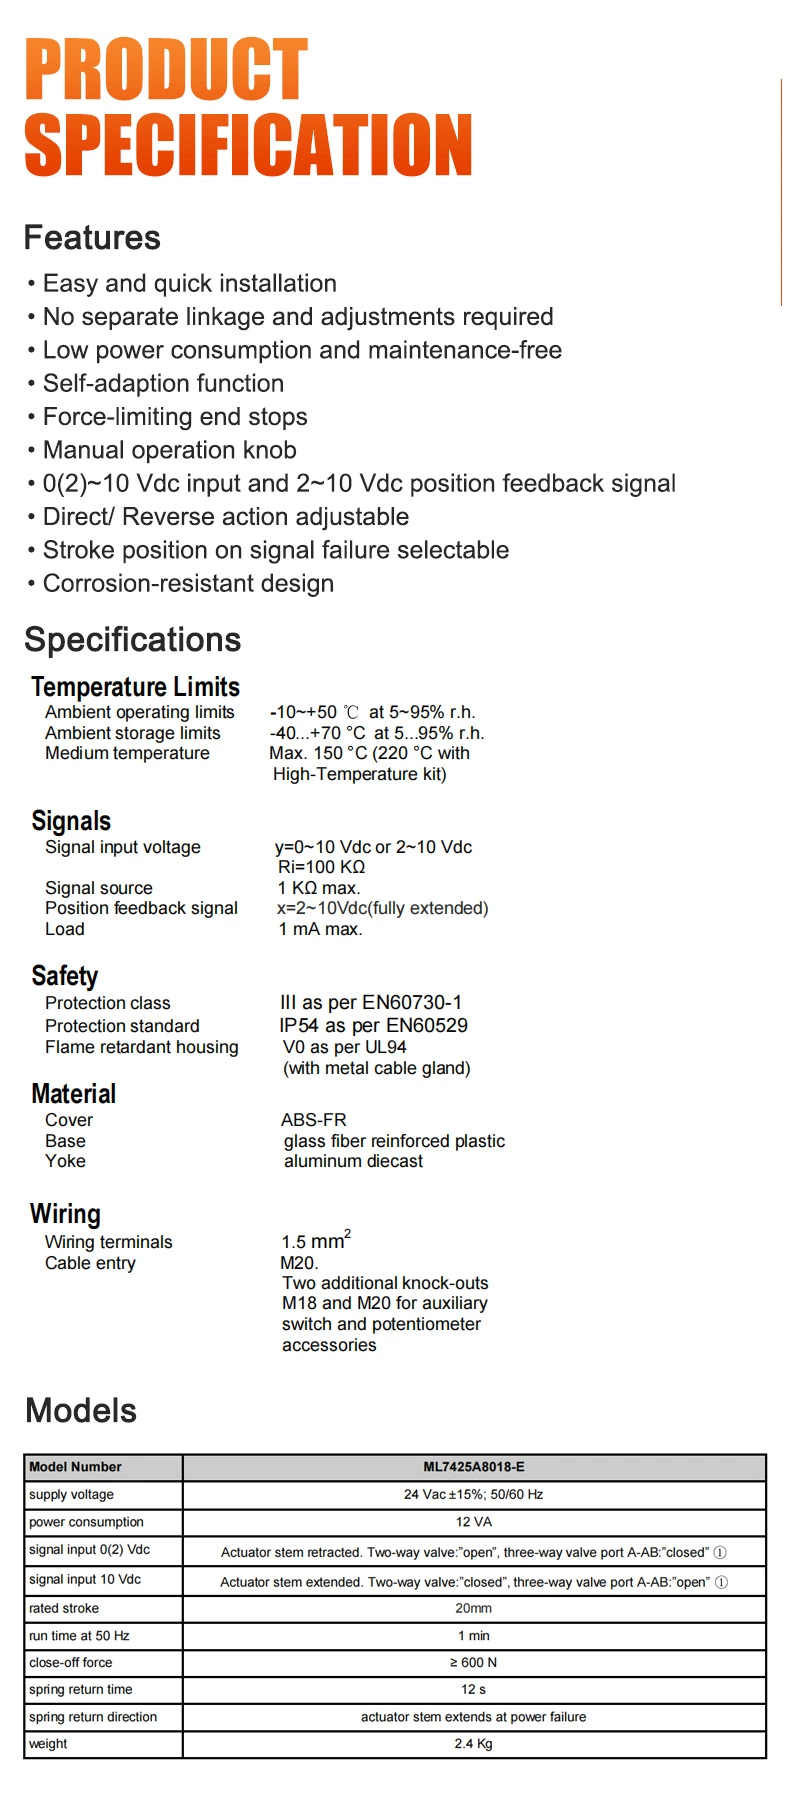 Honeywell Ml7425A8018-E Electric Linear Valve Actuator